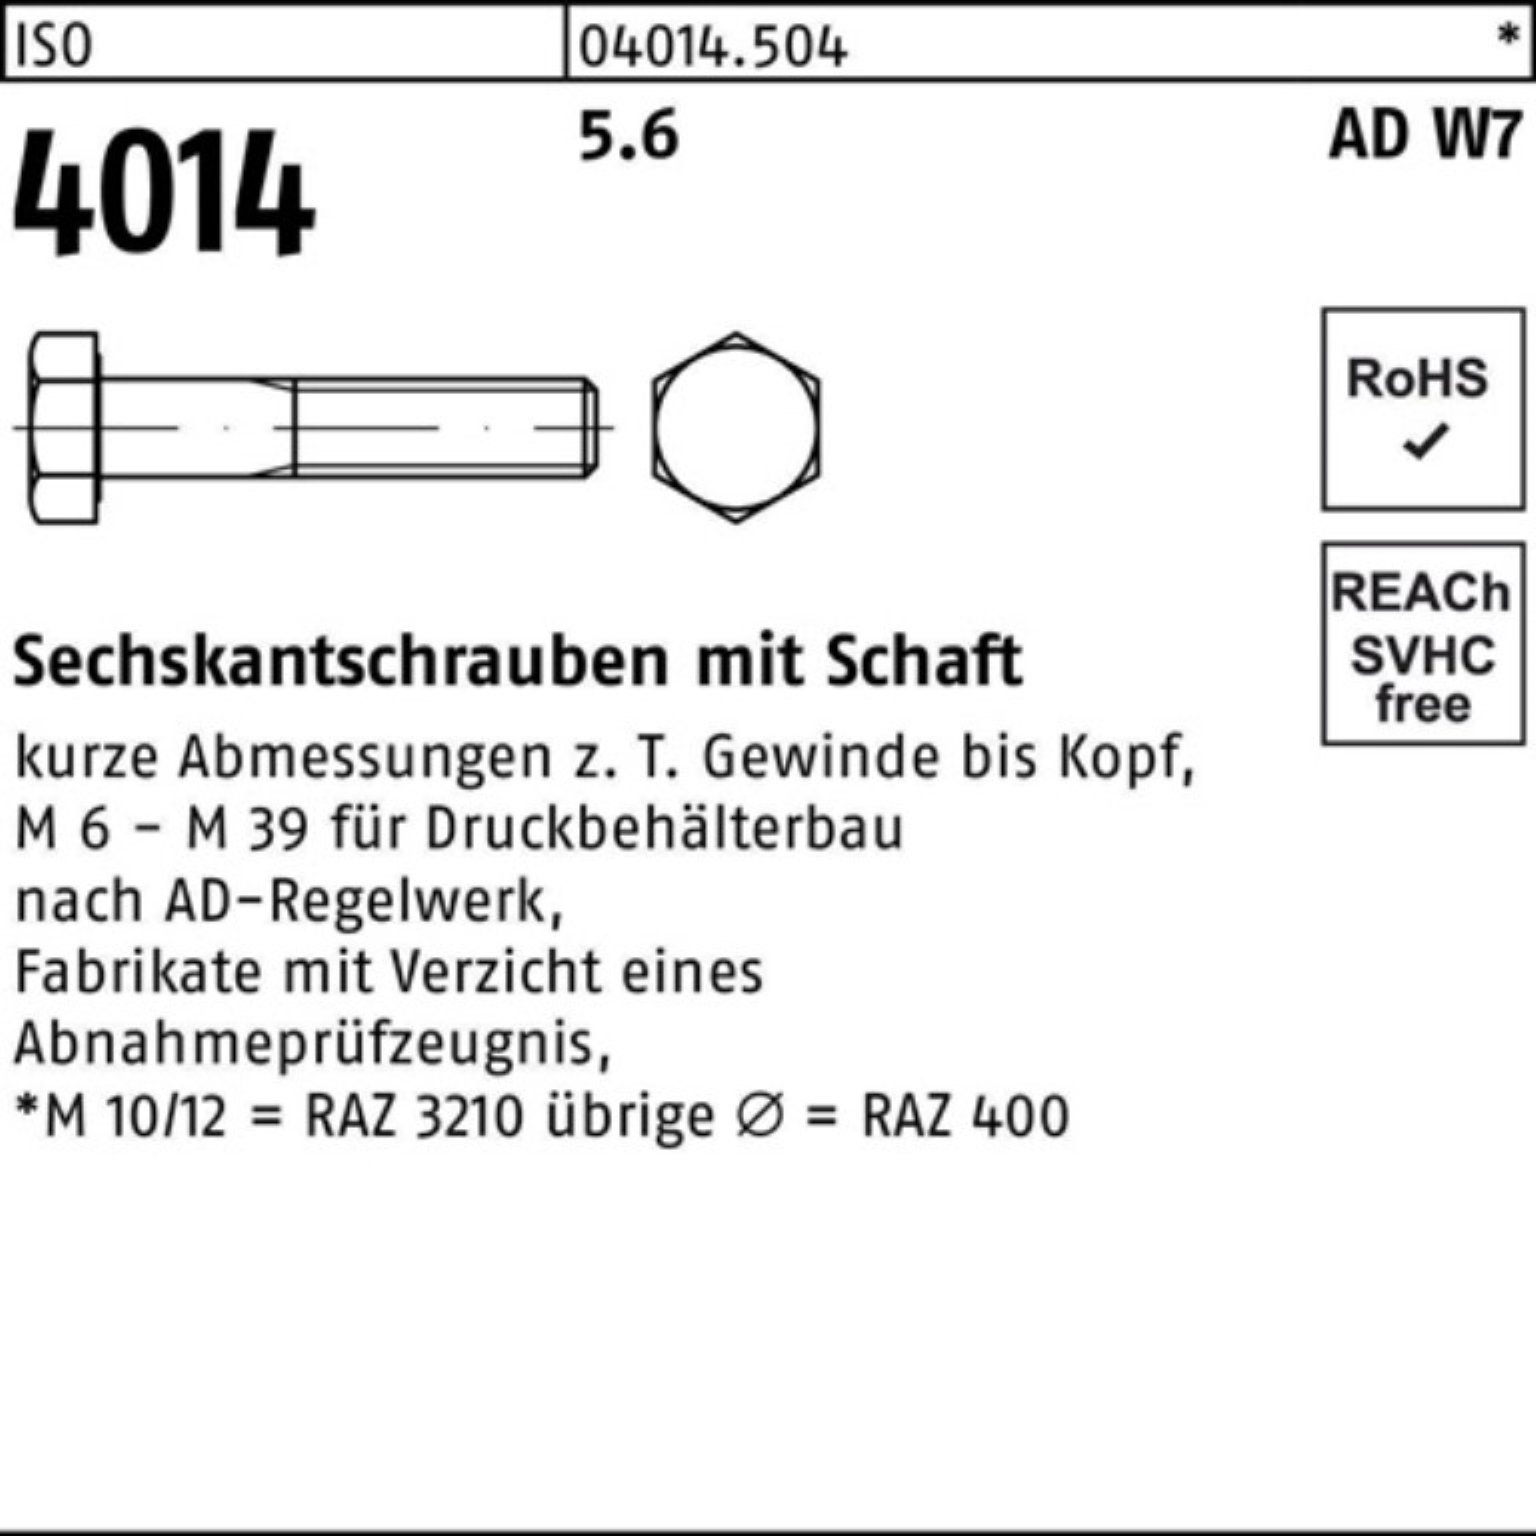 Schaft 4014 5.6 M27x Bufab 100er ISO 180 Sechskantschraube Sechskantschraube 1 Pack W7 Stück